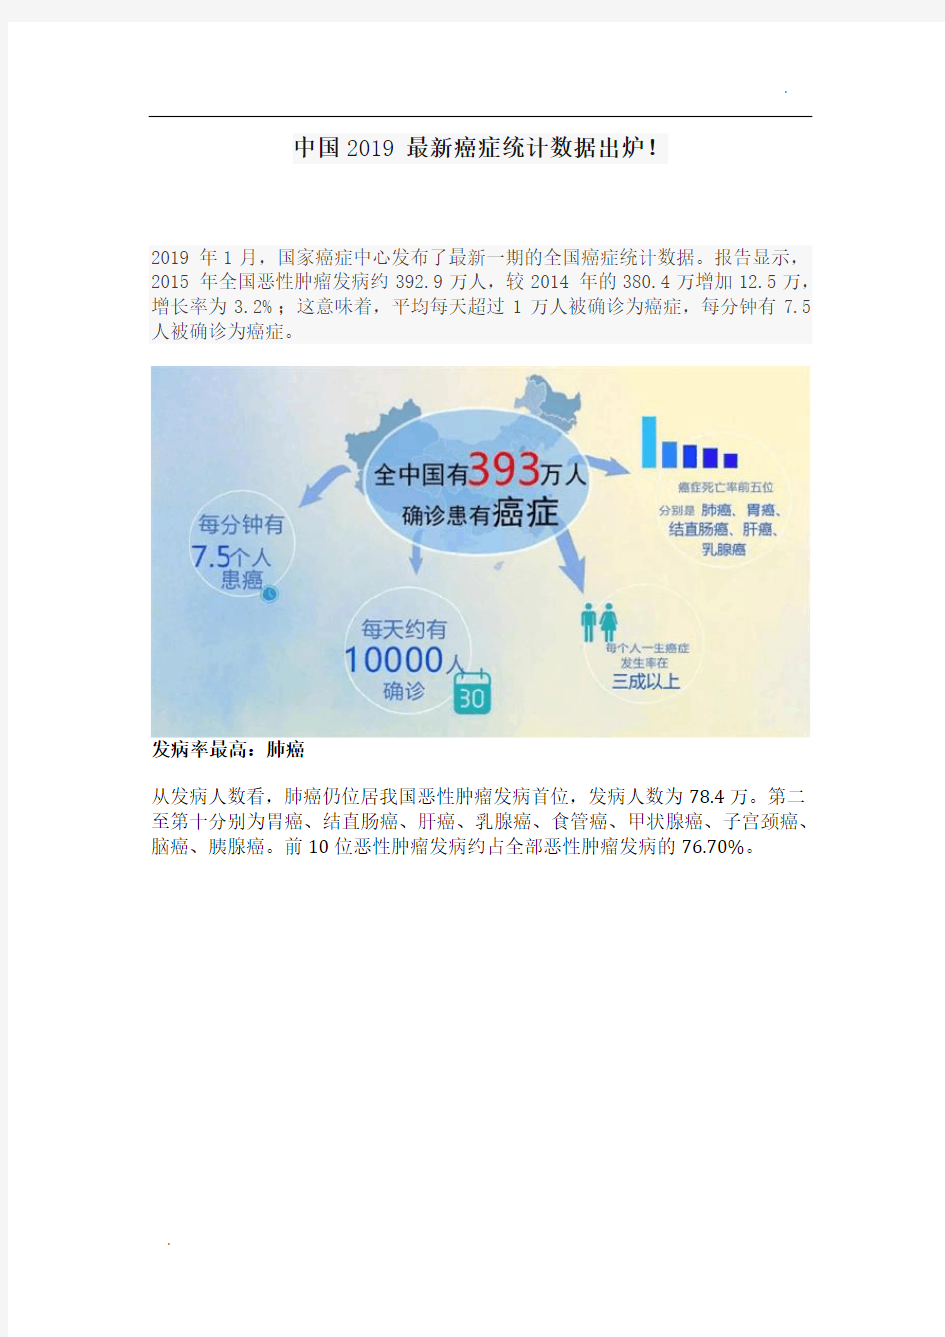 中国2019最新癌症统计数据出炉